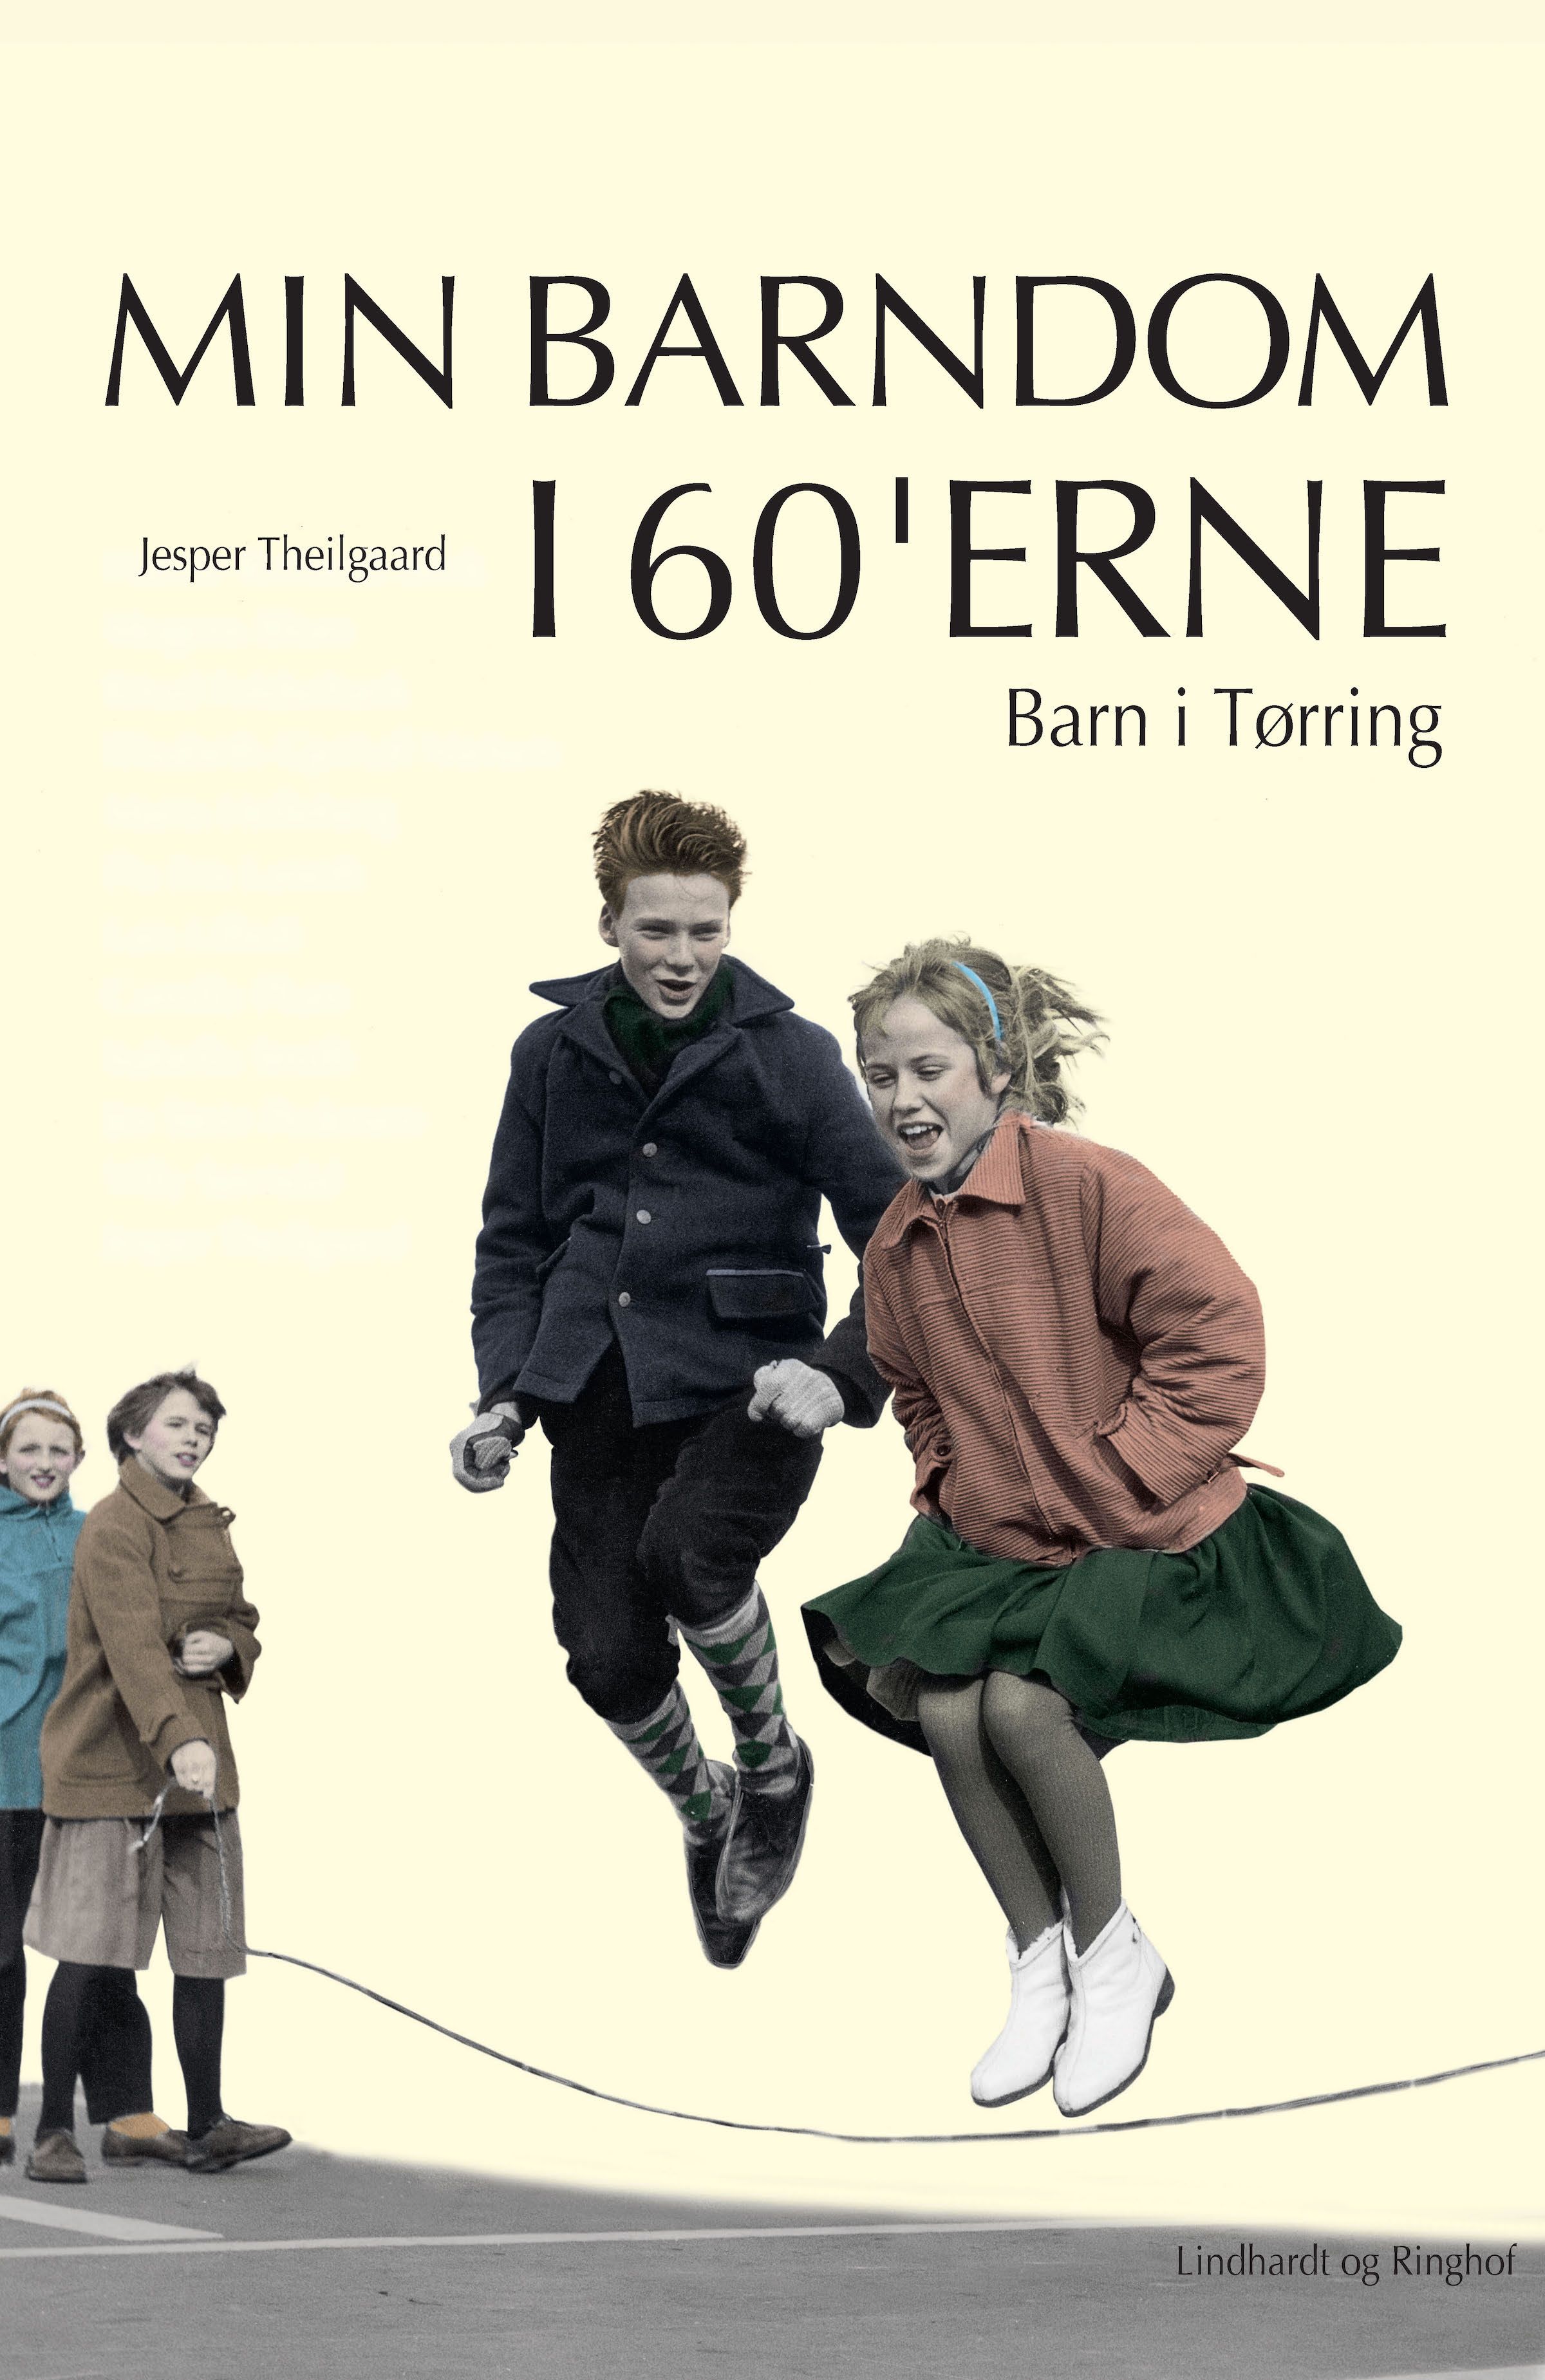 Barn i Tørring, audiobook by Jesper Theilgaard